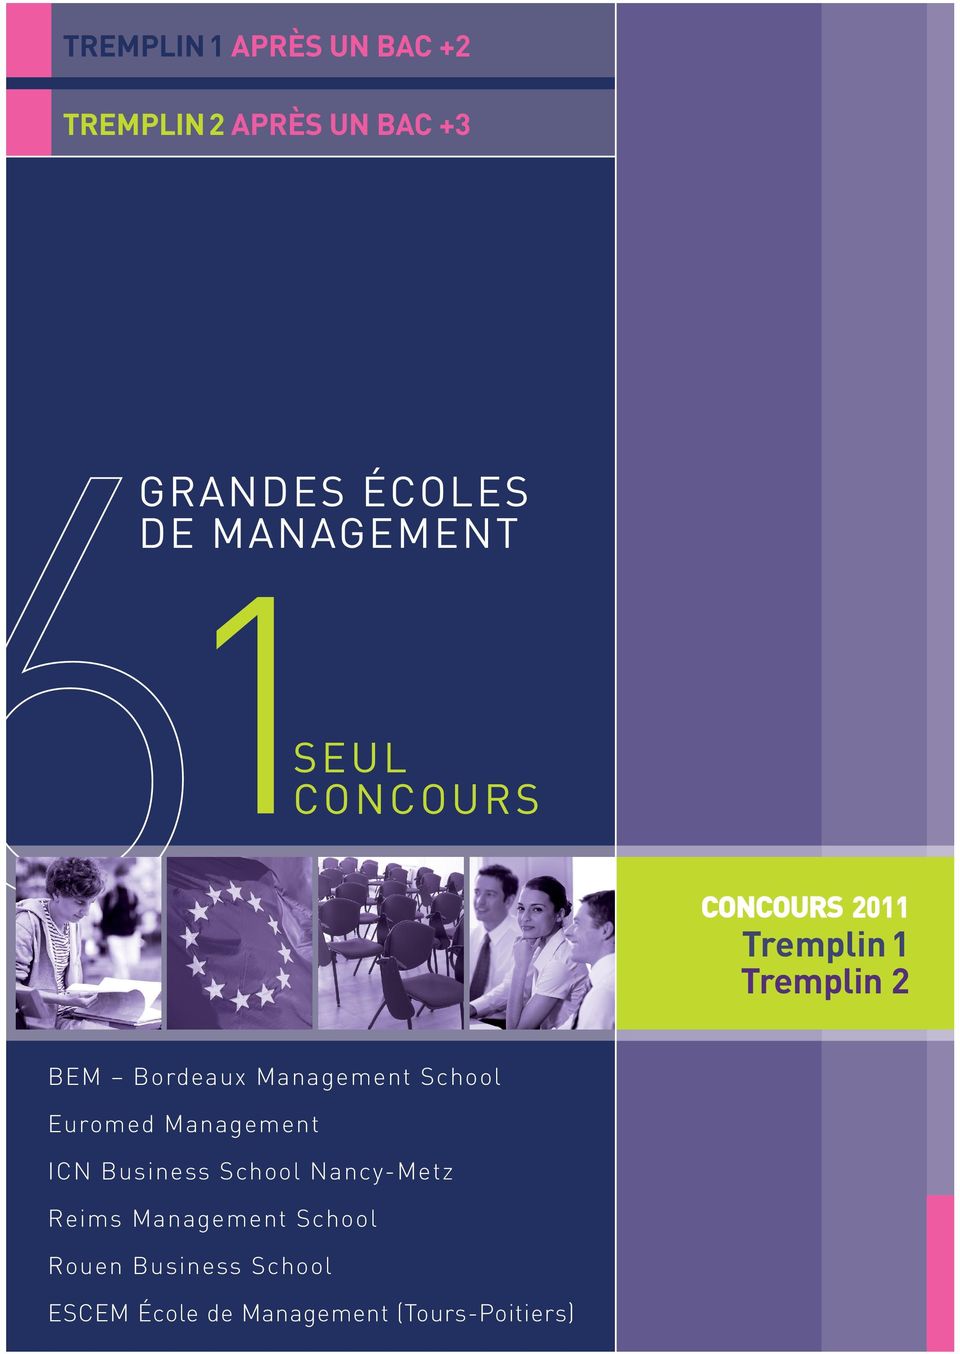 School Euromed Management ICN Business School Nancy-Metz Reims